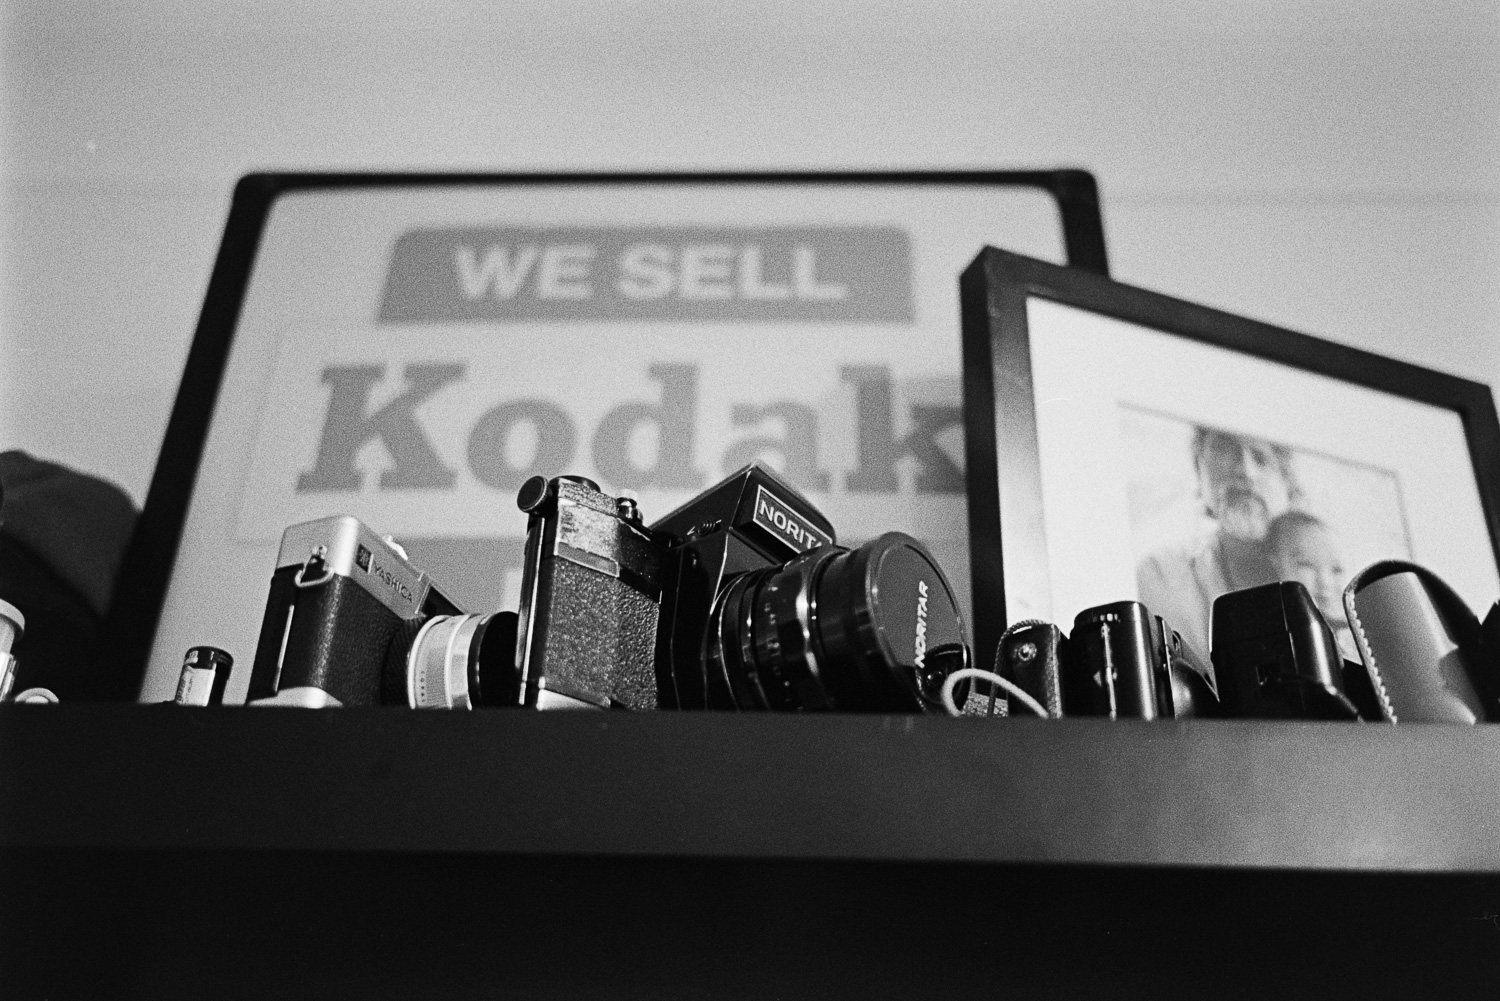  We sell Kodak, and I buy. 